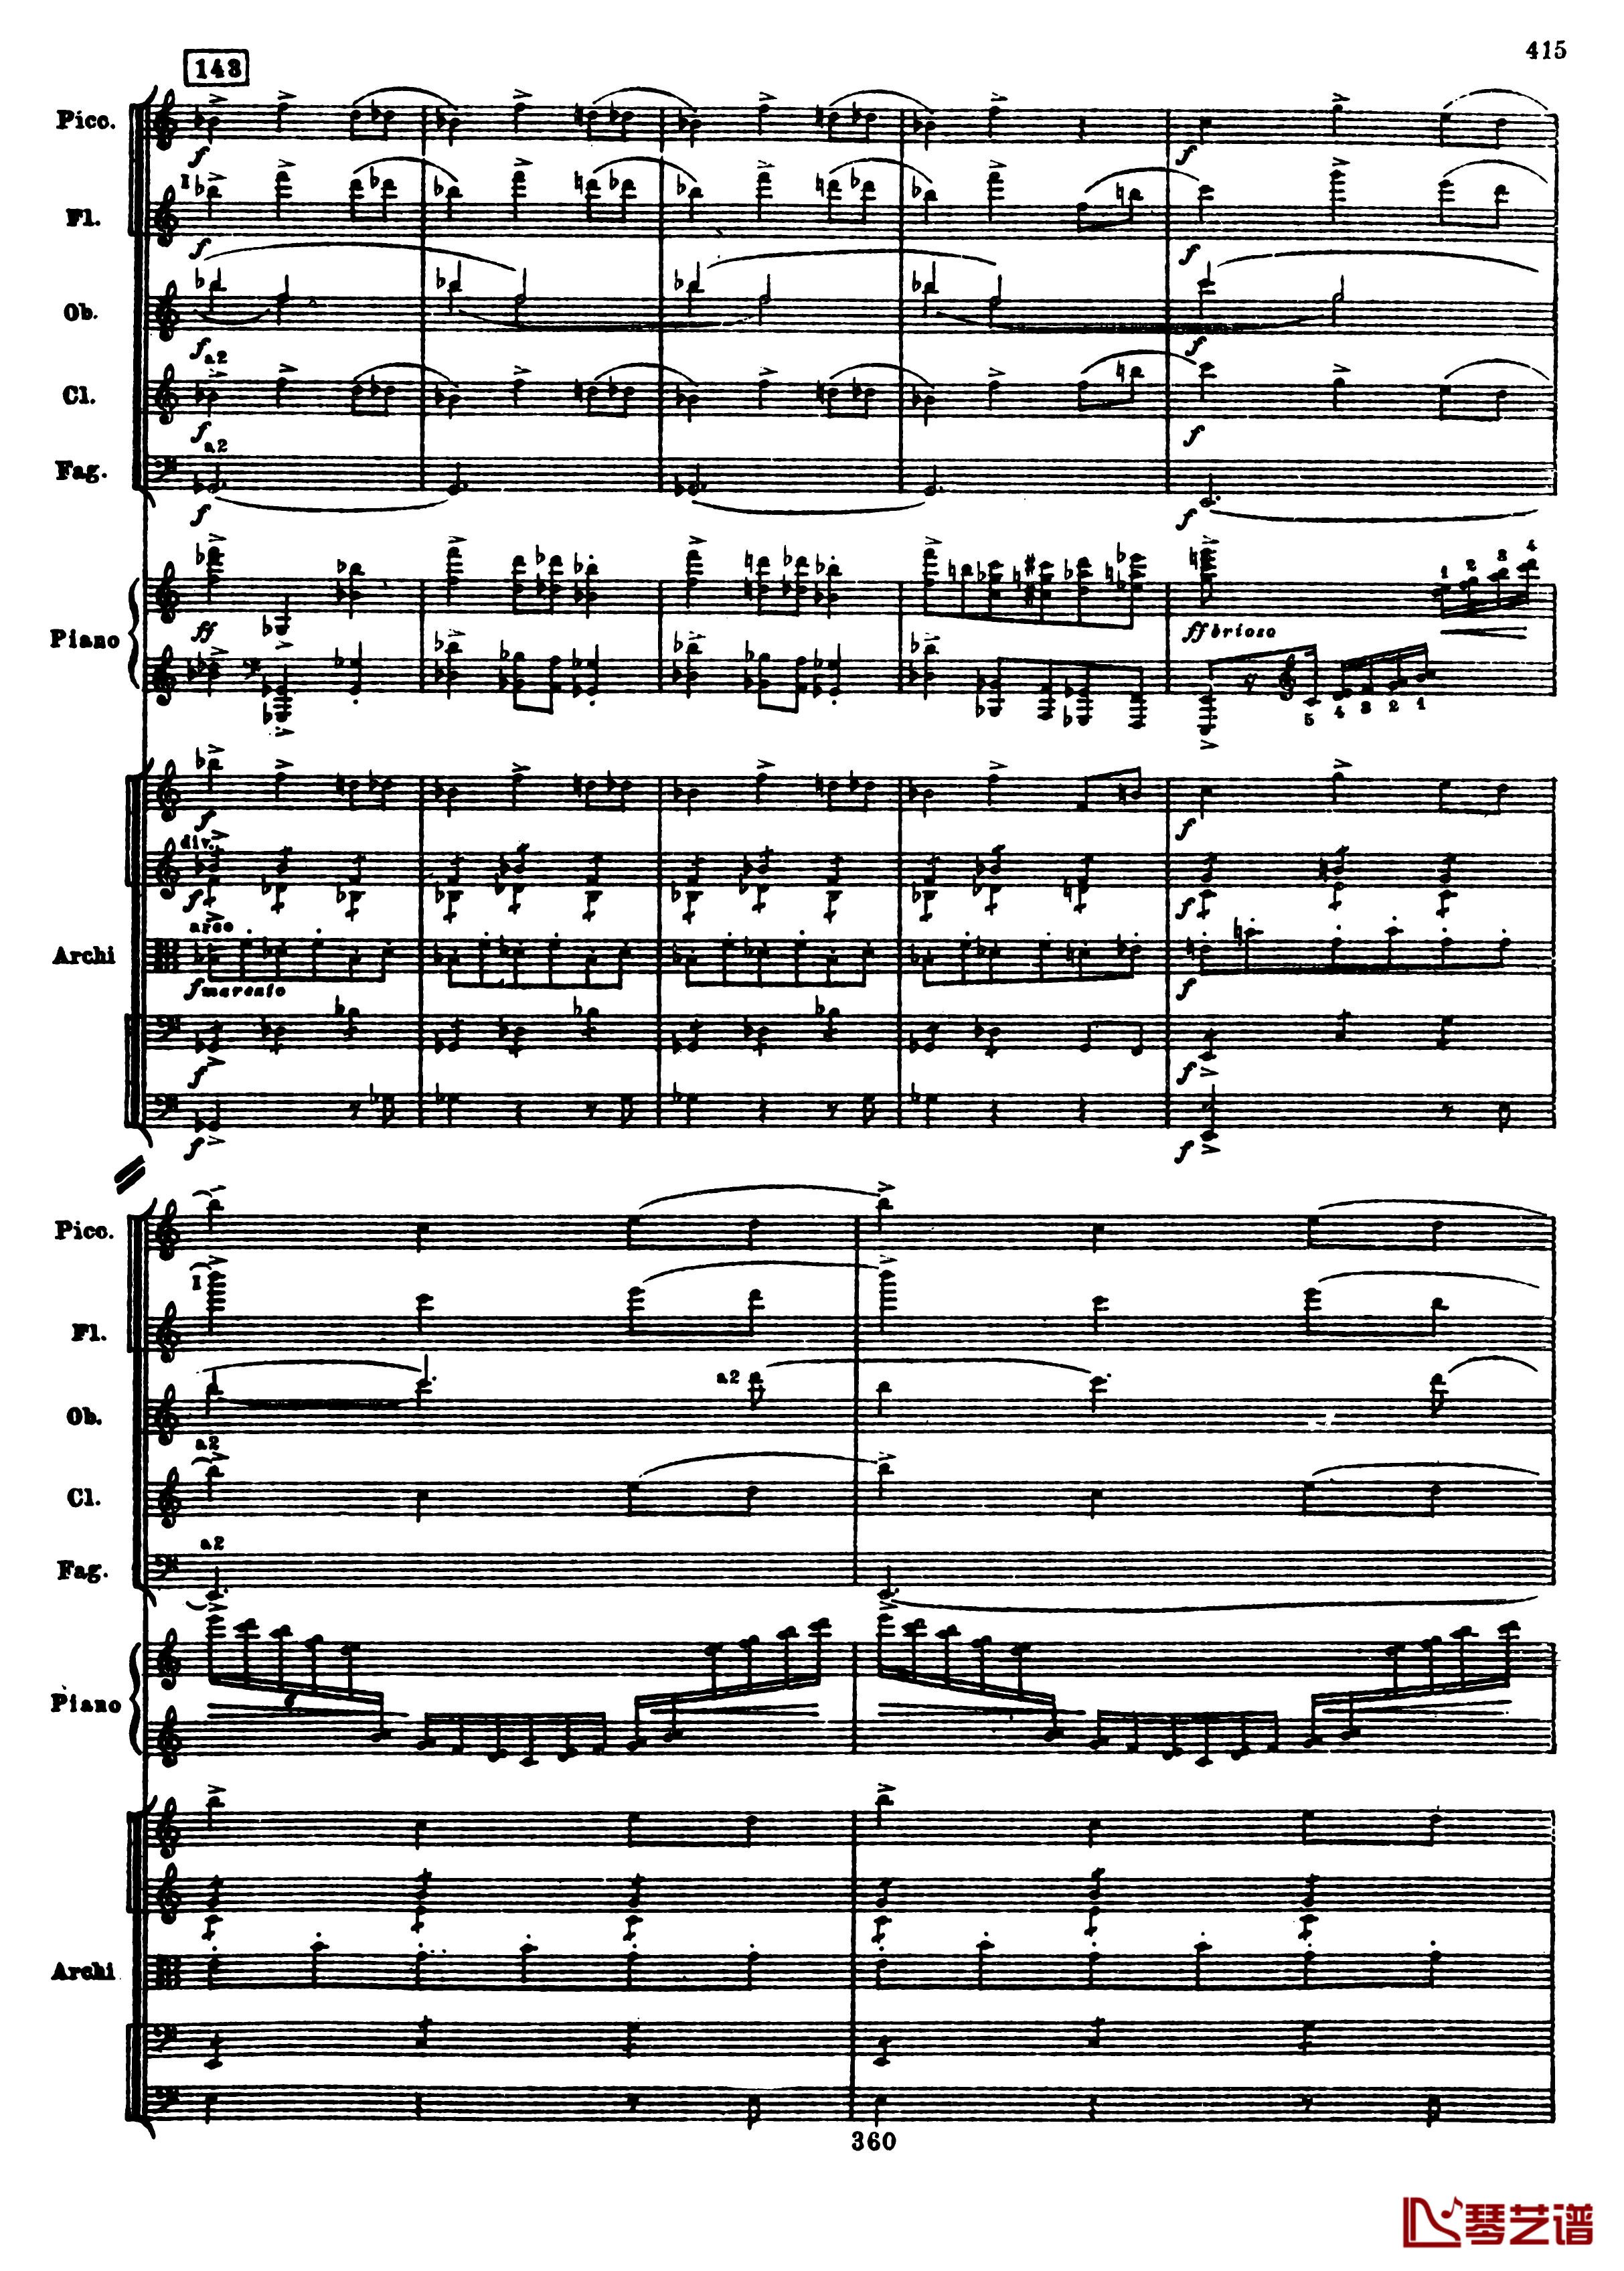 普罗科菲耶夫第三钢琴协奏曲钢琴谱-总谱-普罗科非耶夫147